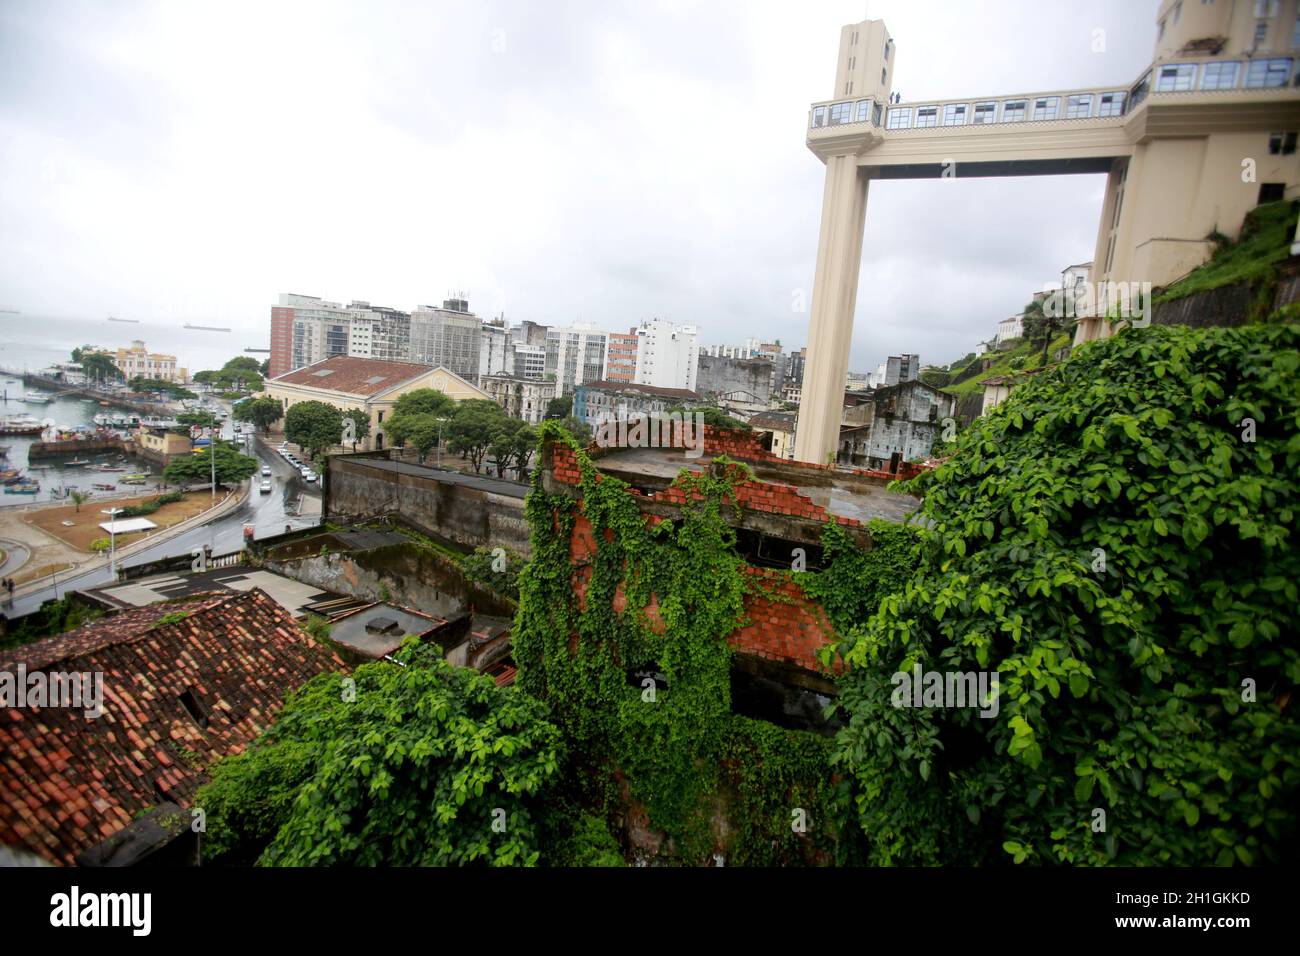 salvador, bahia / brasilien - 23. Mai 2015: Lacerda Aufzug im historischen Zentrum der Stadt Salvador. Das Gerät verbindet die obere und untere c Stockfoto